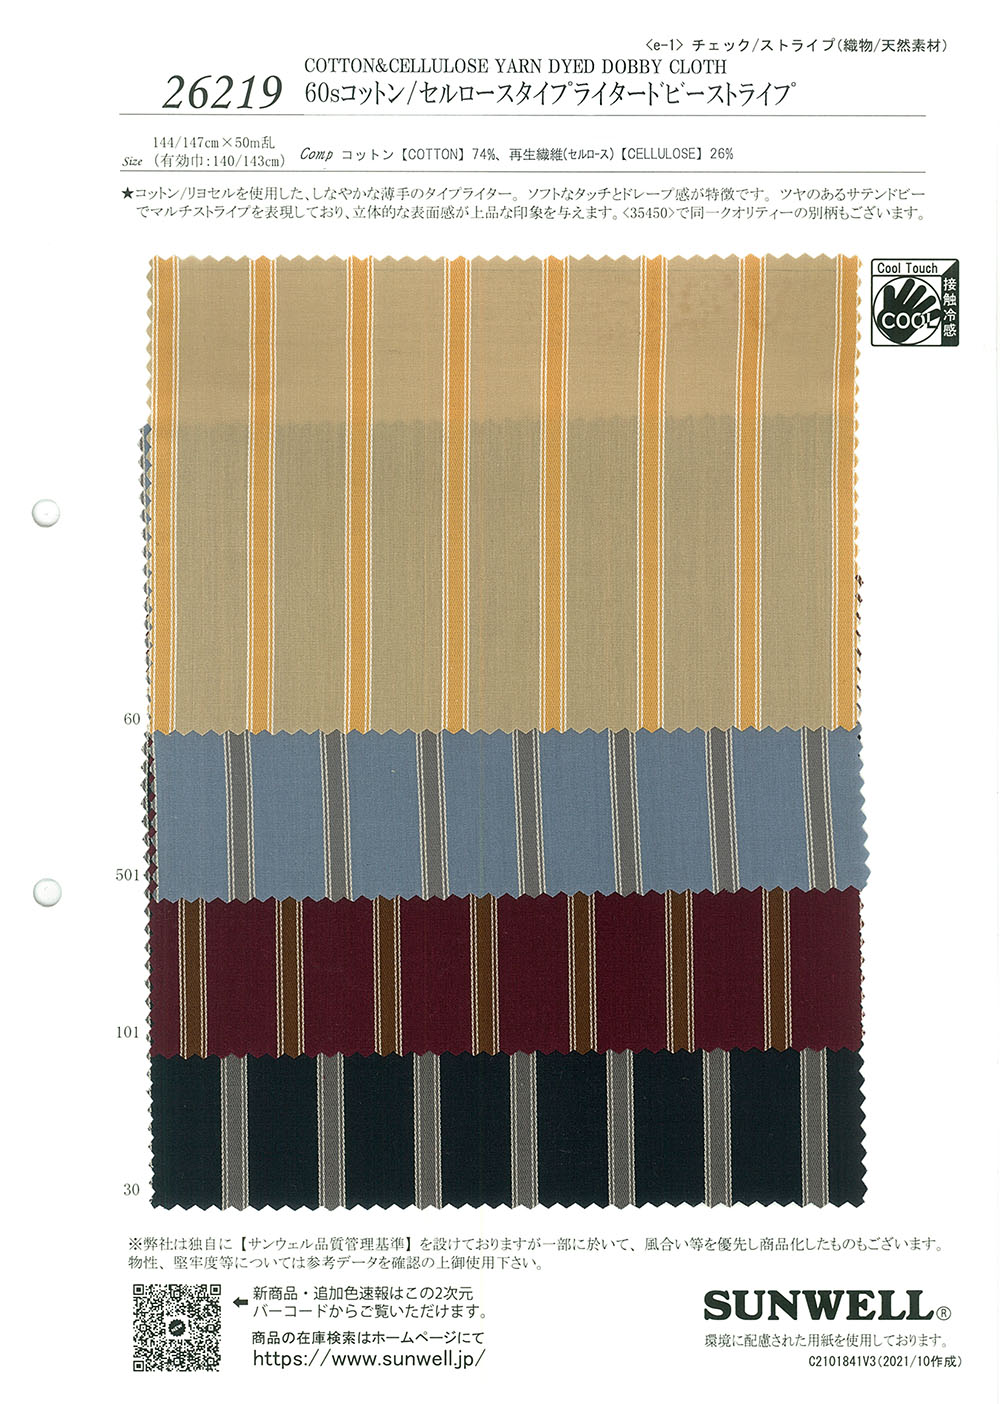 26219 60 Chỉ đơn Cotton / Cellulose Vải Cotton Typewritter Dobby Kẻ Sọc SUNWELL ( Giếng Trời )